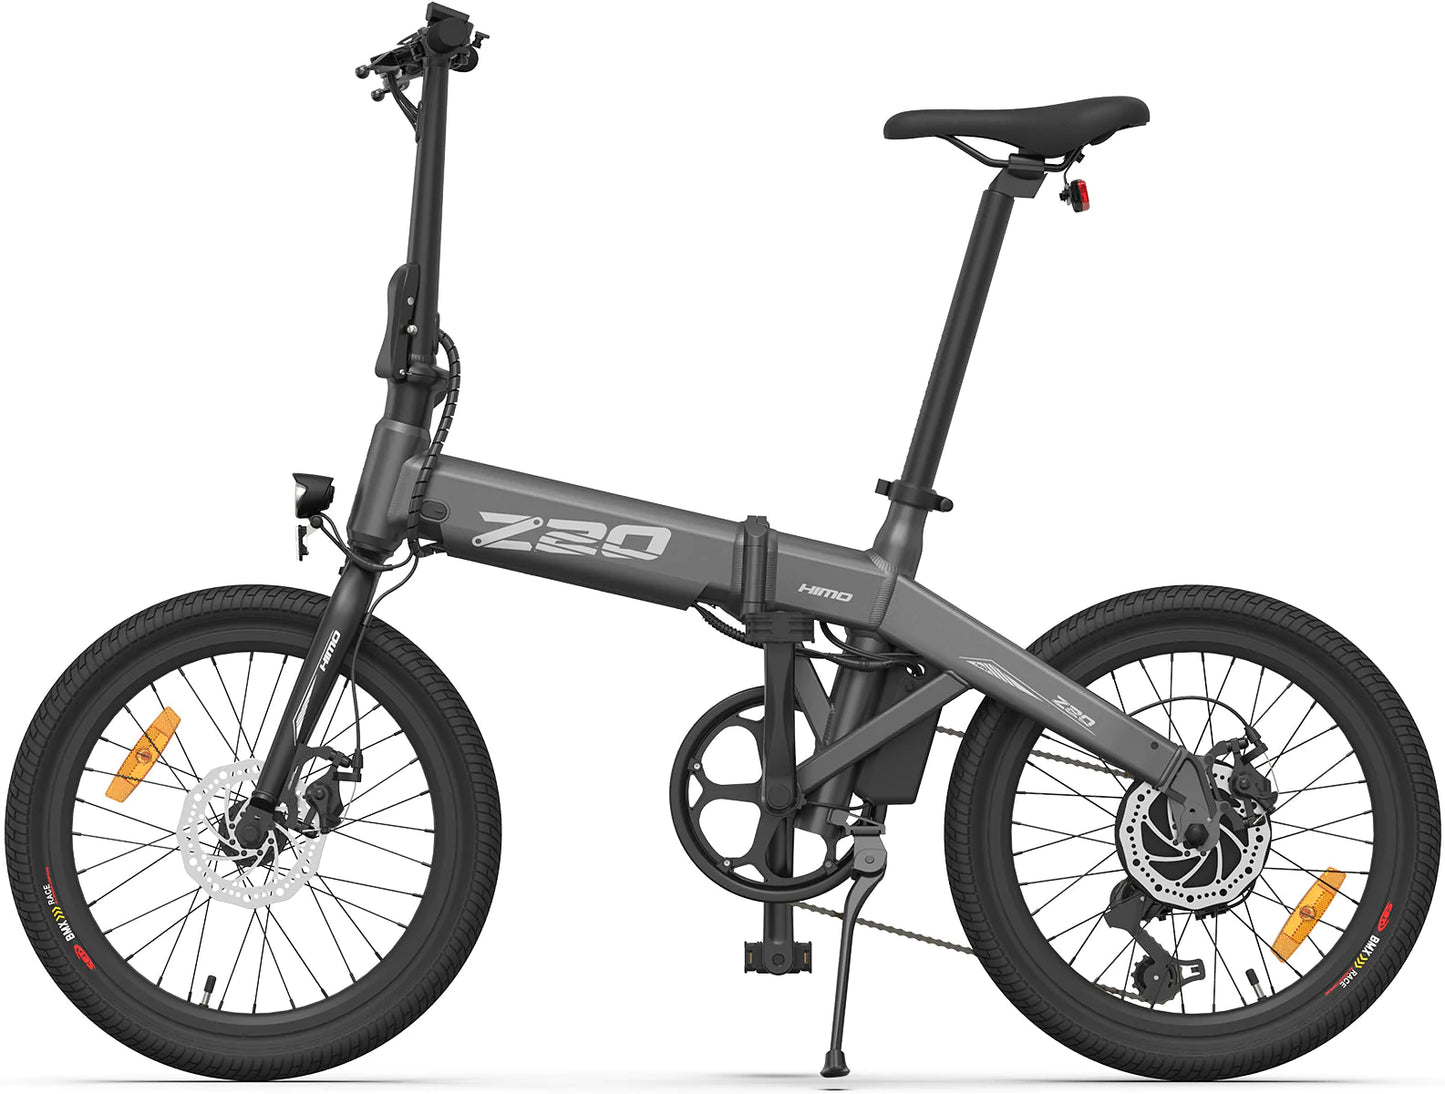 HIMO Z20 Plus E-Bike pieghevole 250W